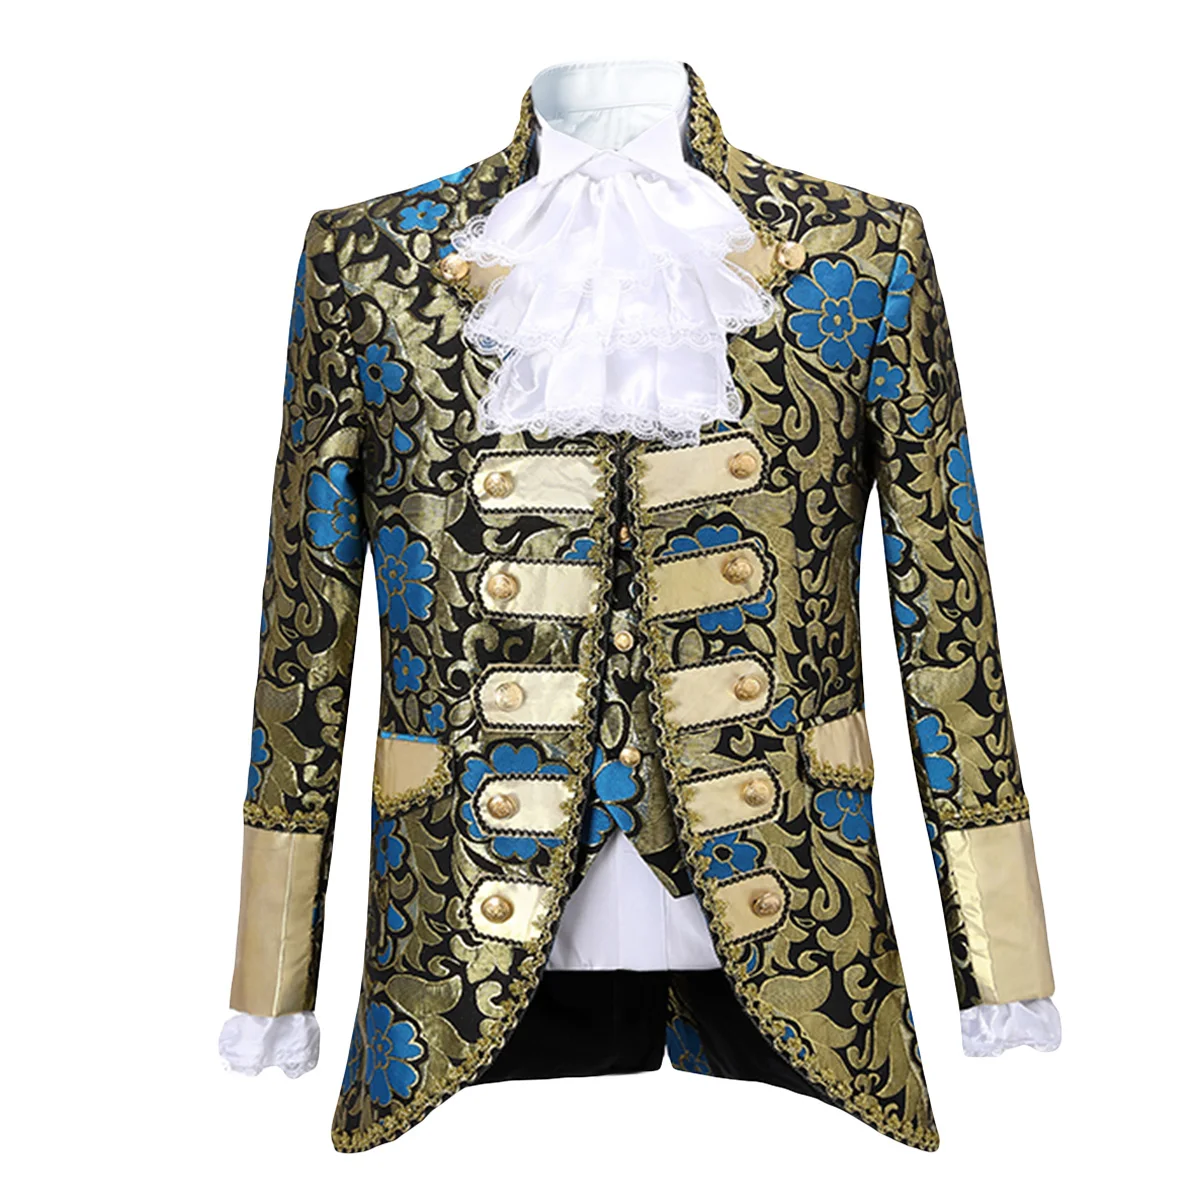 Yunclos мужской костюм для суда сценическое платье двубортный комплект из 5 предметов(пиджак+ жилет+ брюки+ воротник цветок+ рукав цветок